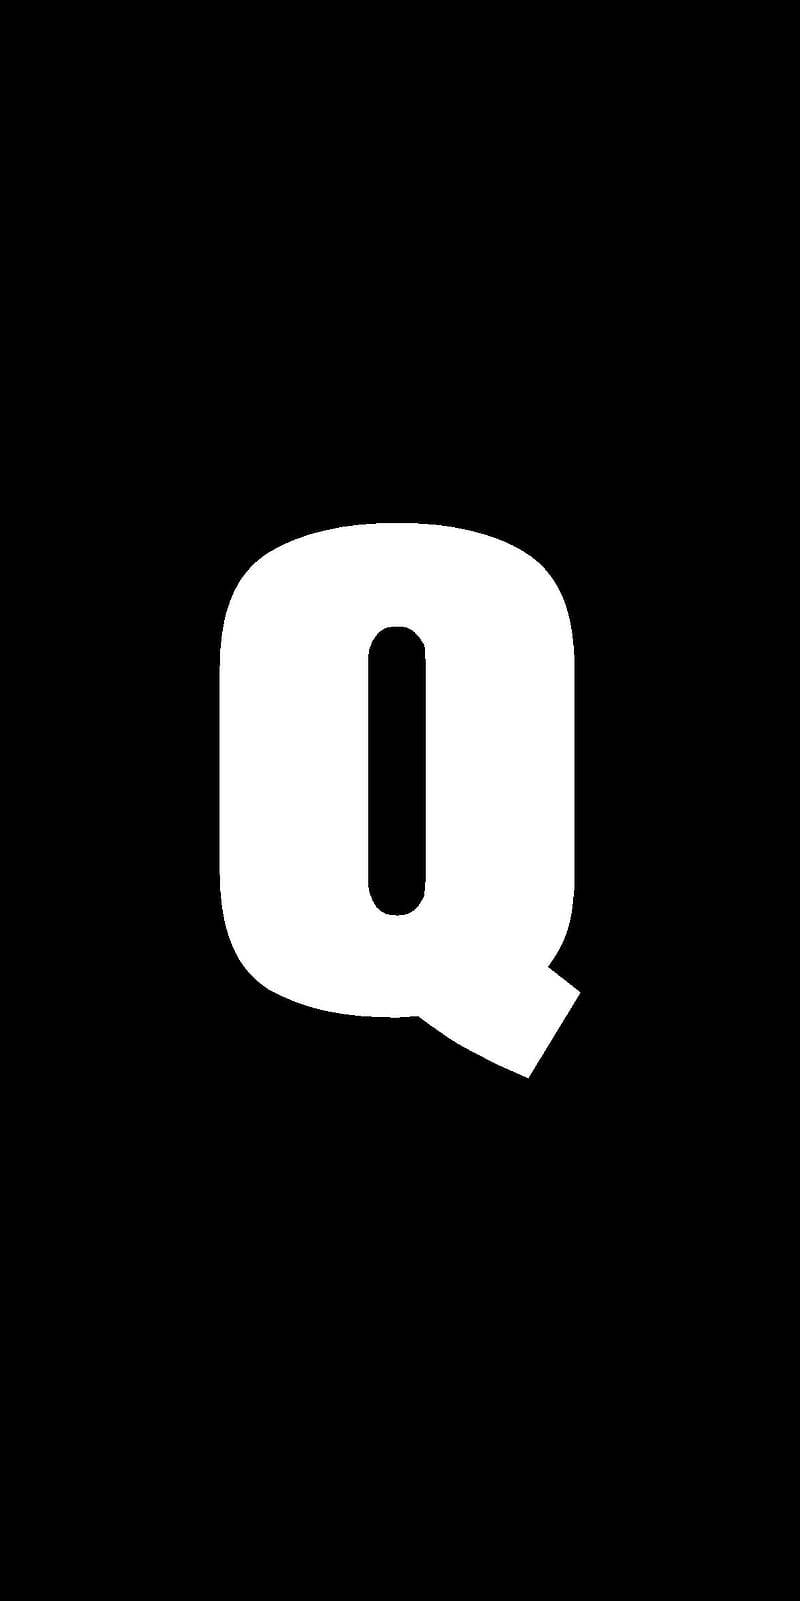 Black And White Letter Q Wallpaper